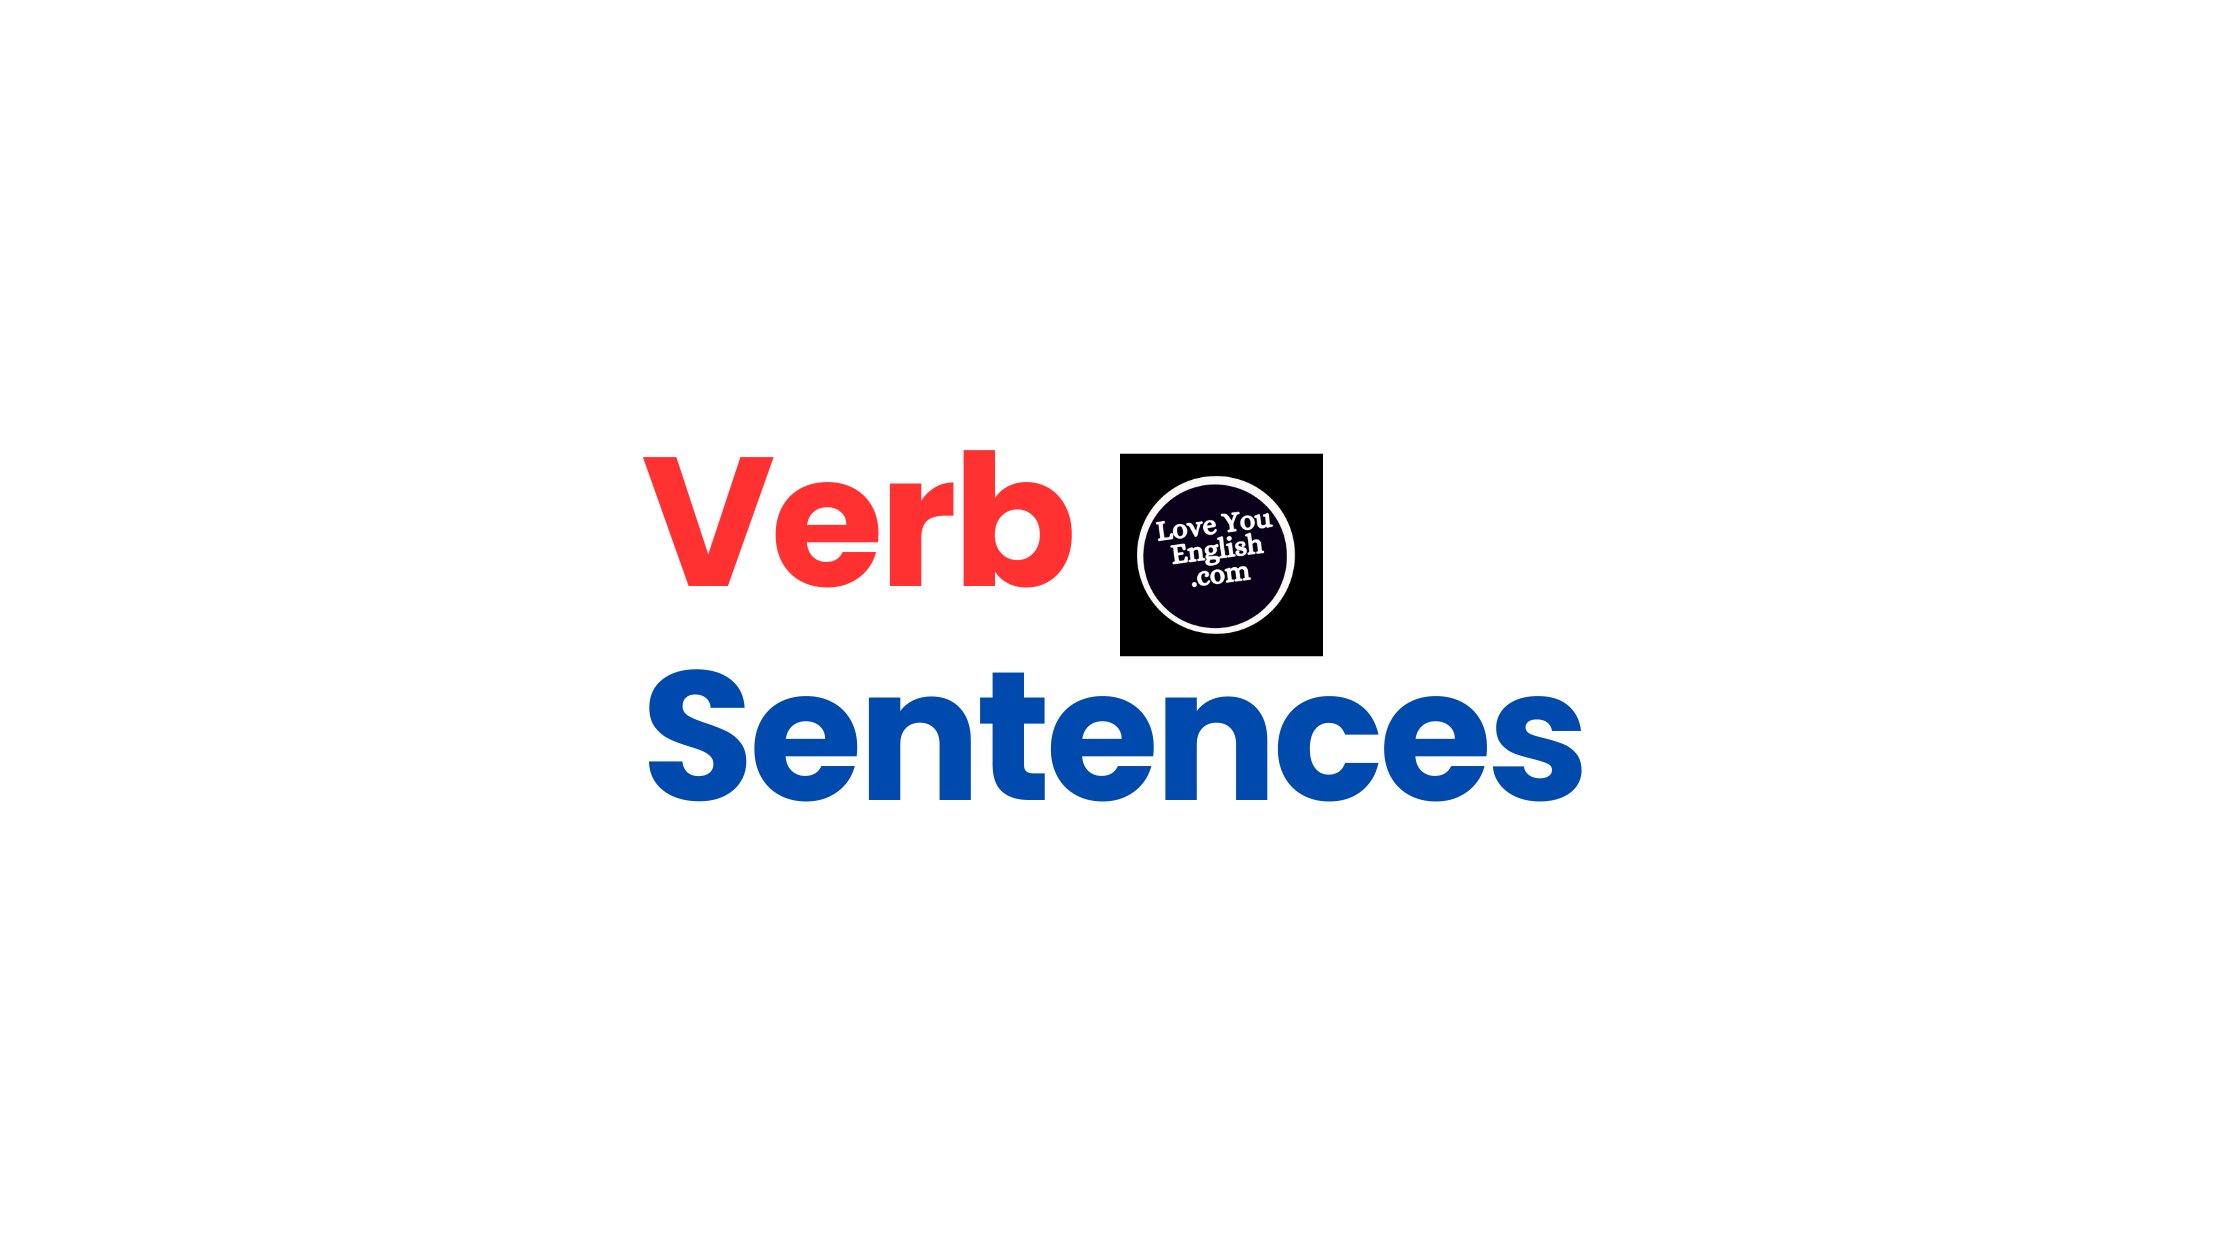 Sentences with verbs